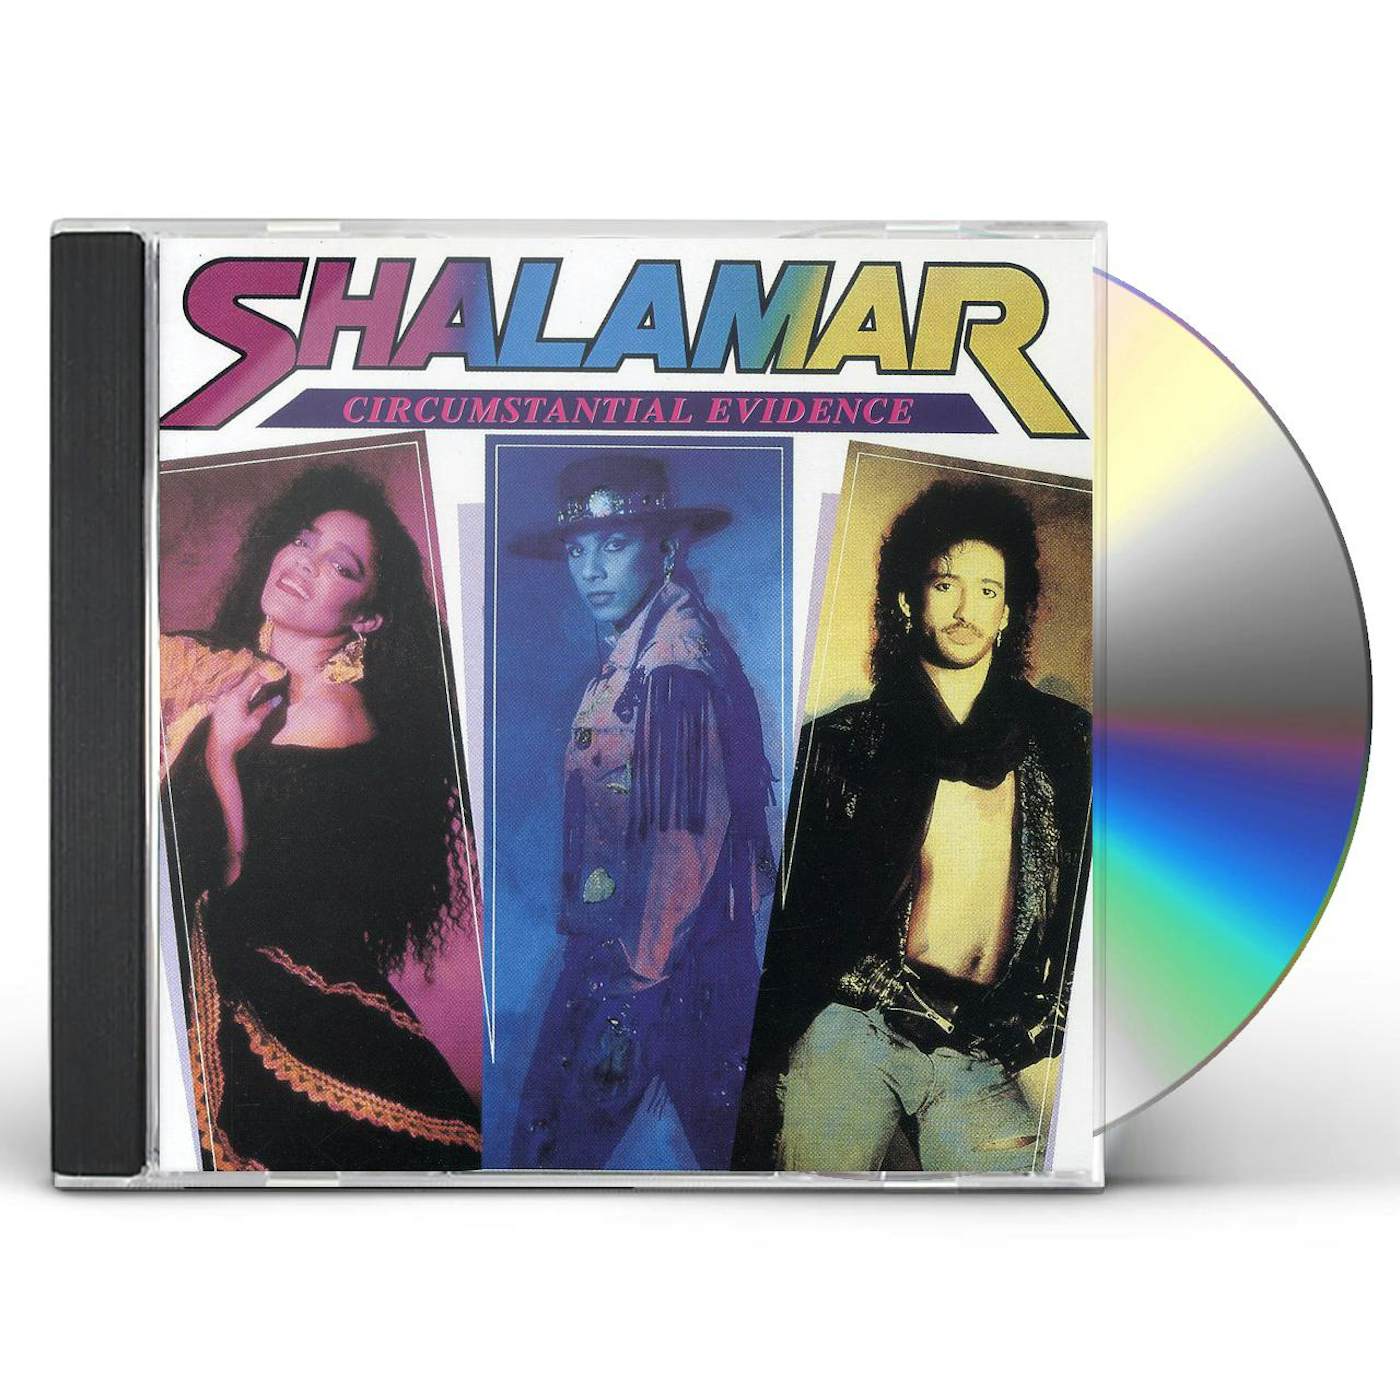 Shalamar CIRCUMSTANTIAL EVIDENCE CD